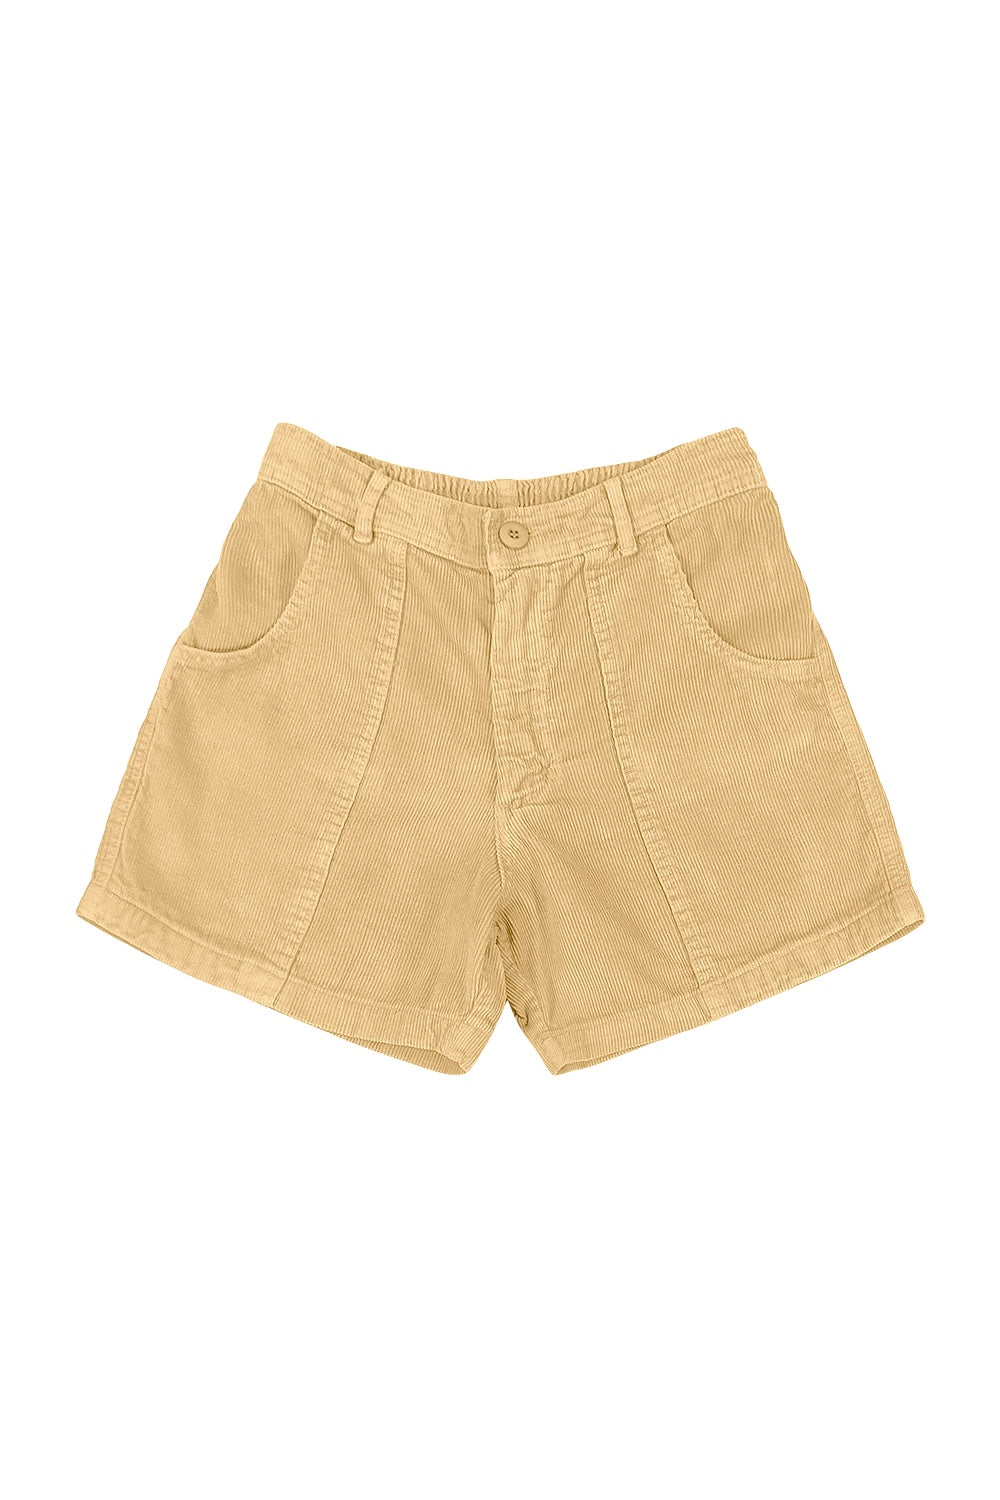 Siola corduroy cotton shorts - Neutrals